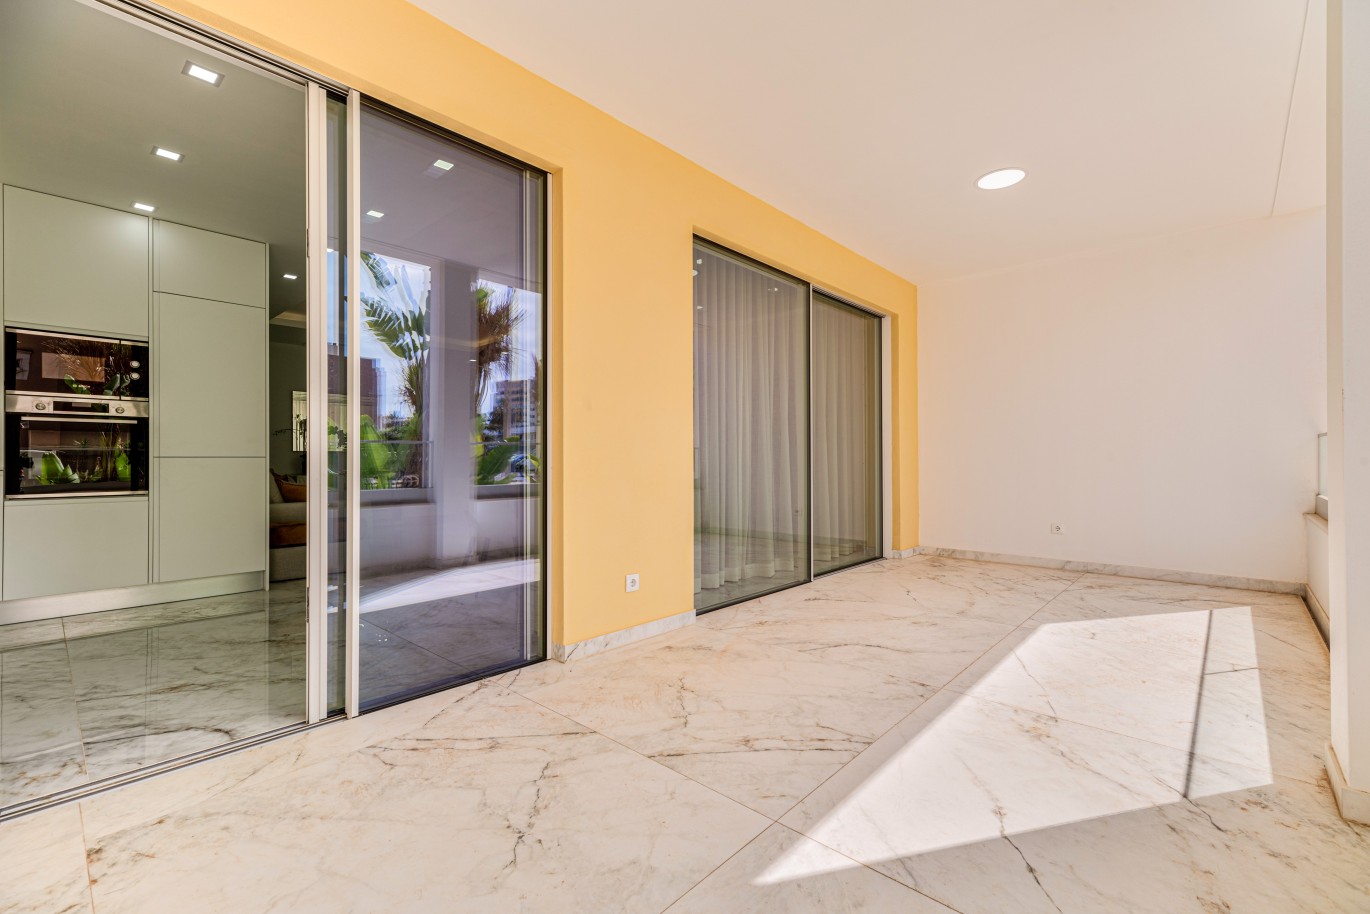 Apartamento, com terraço, para venda, em Lagos, Algarve_238376